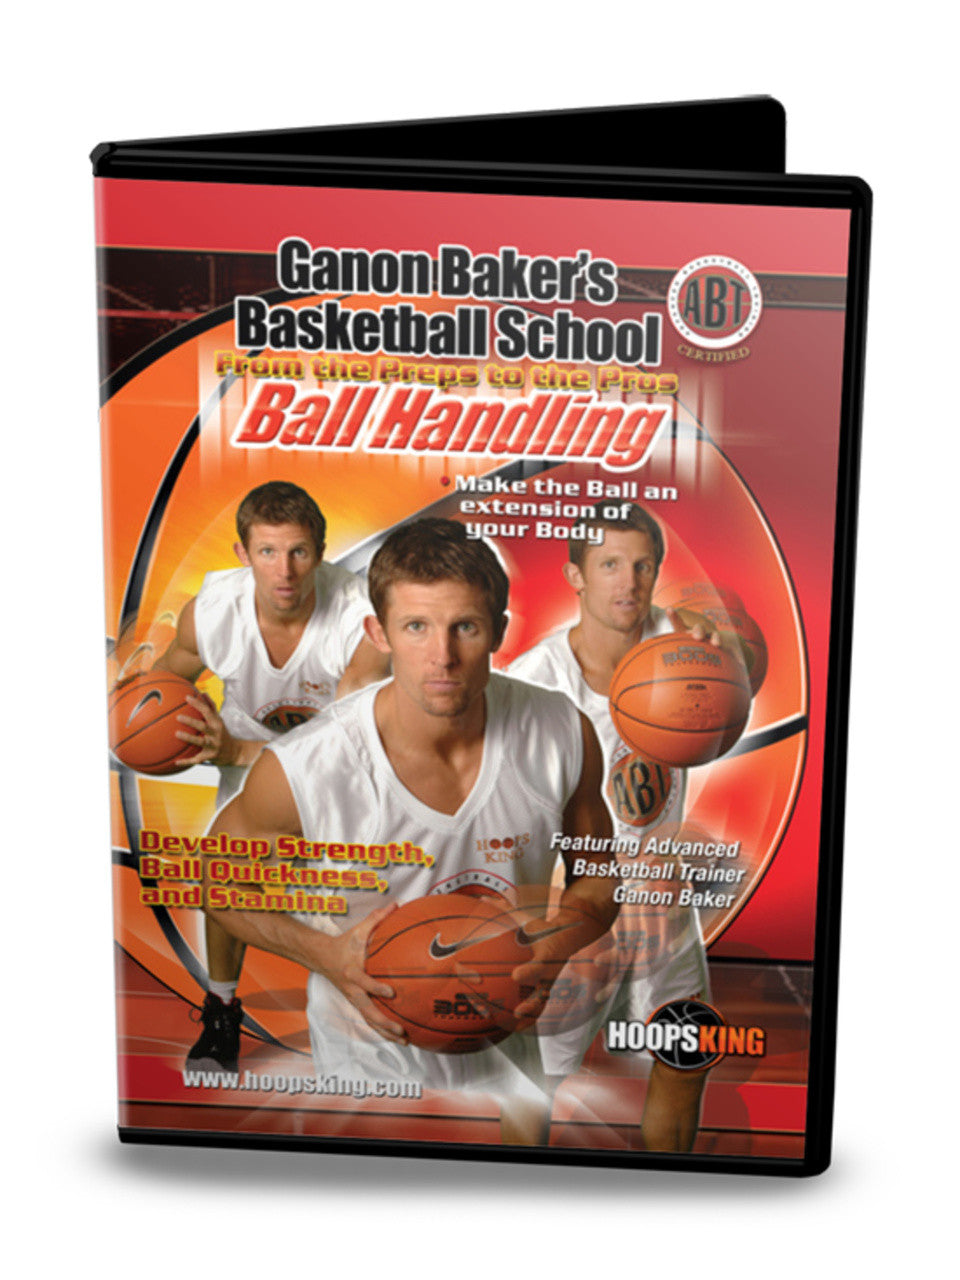 Ganon Baker Ball Handling DVD